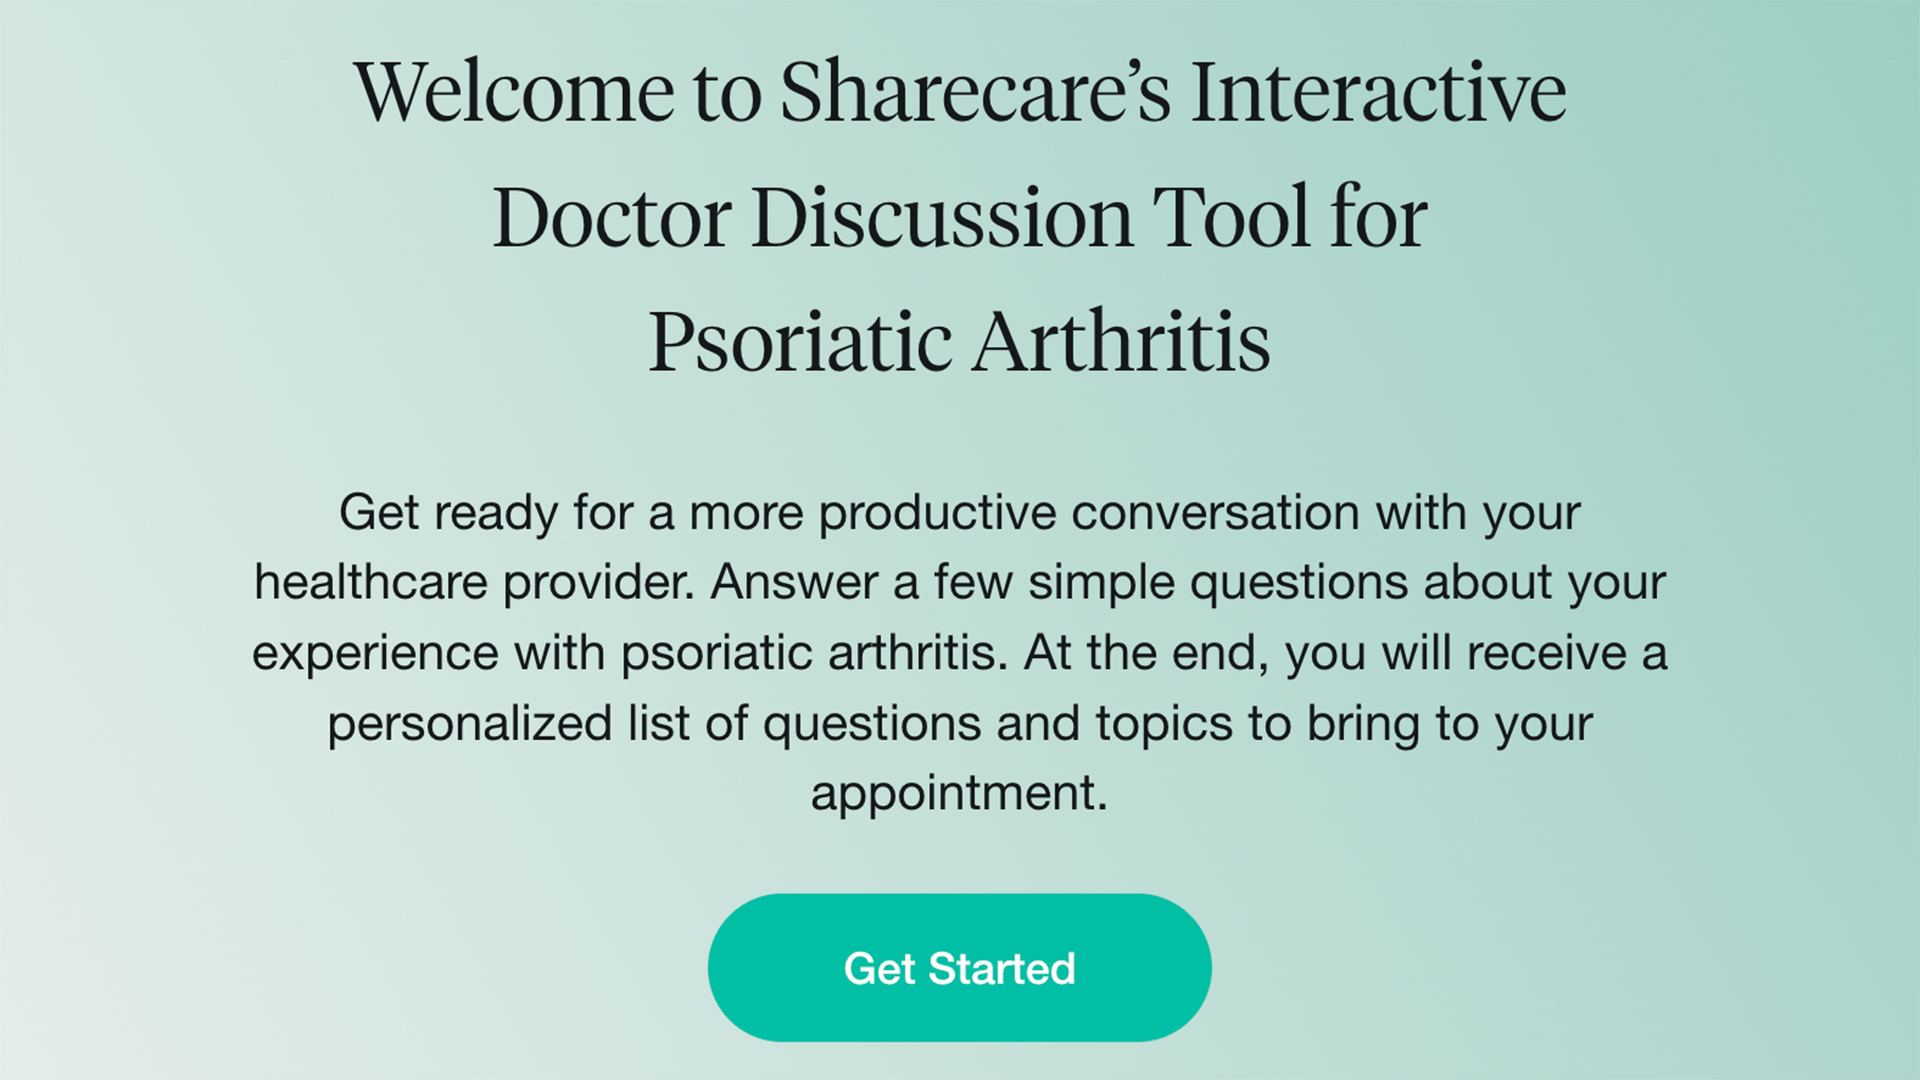 Doctor Discussion Guide: Psoriatic Arthritis